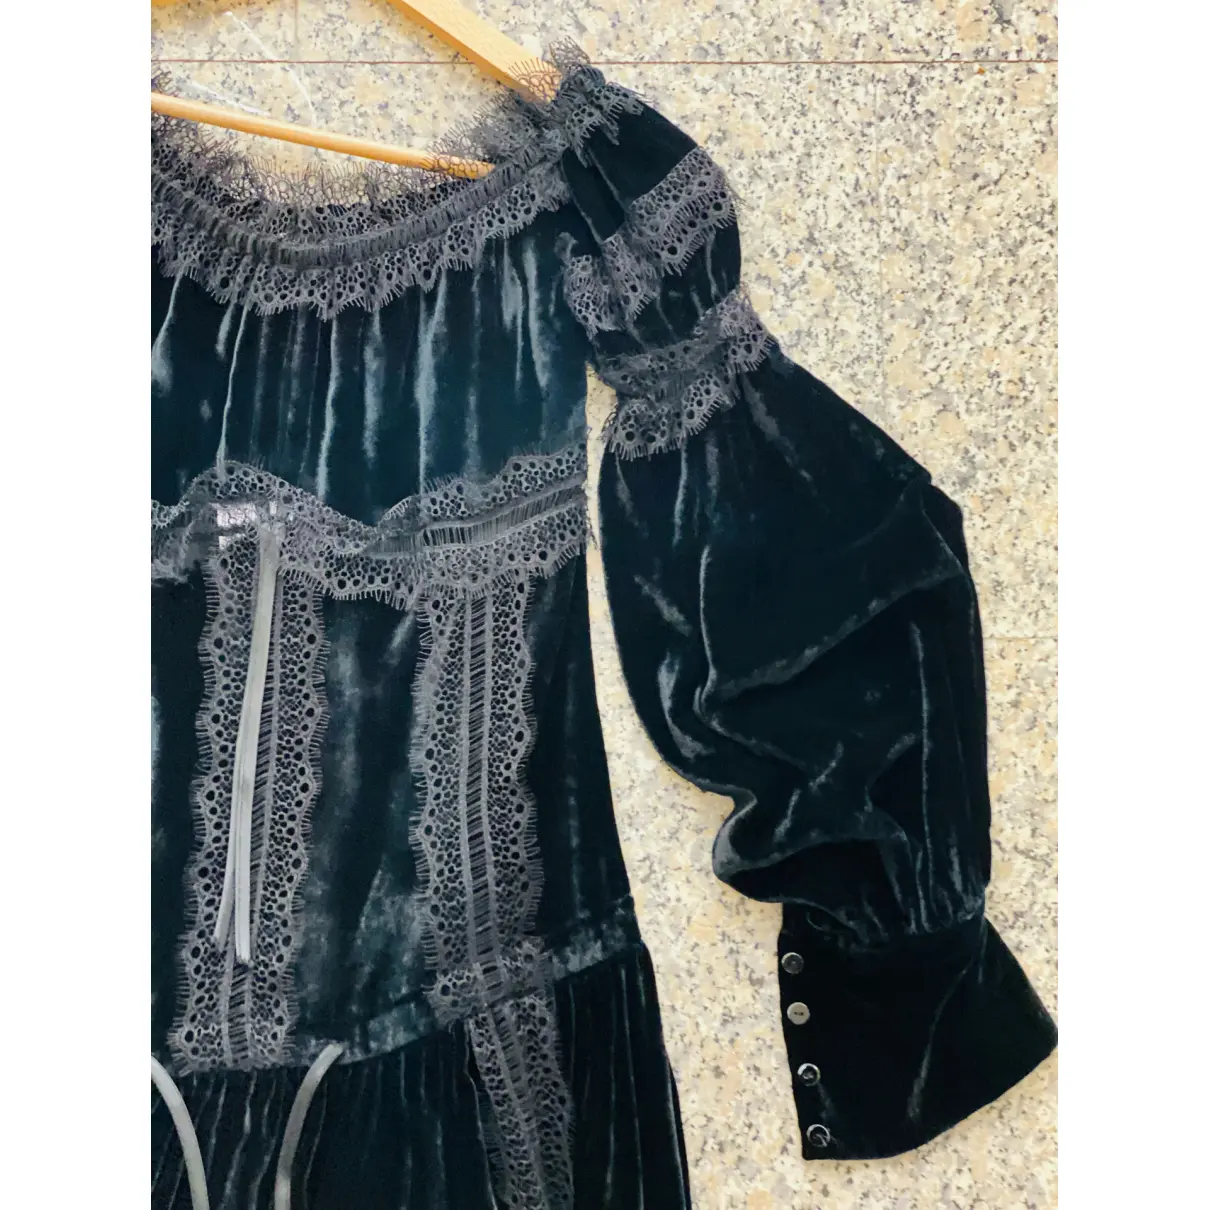 Buy Wandering Velvet mini dress online